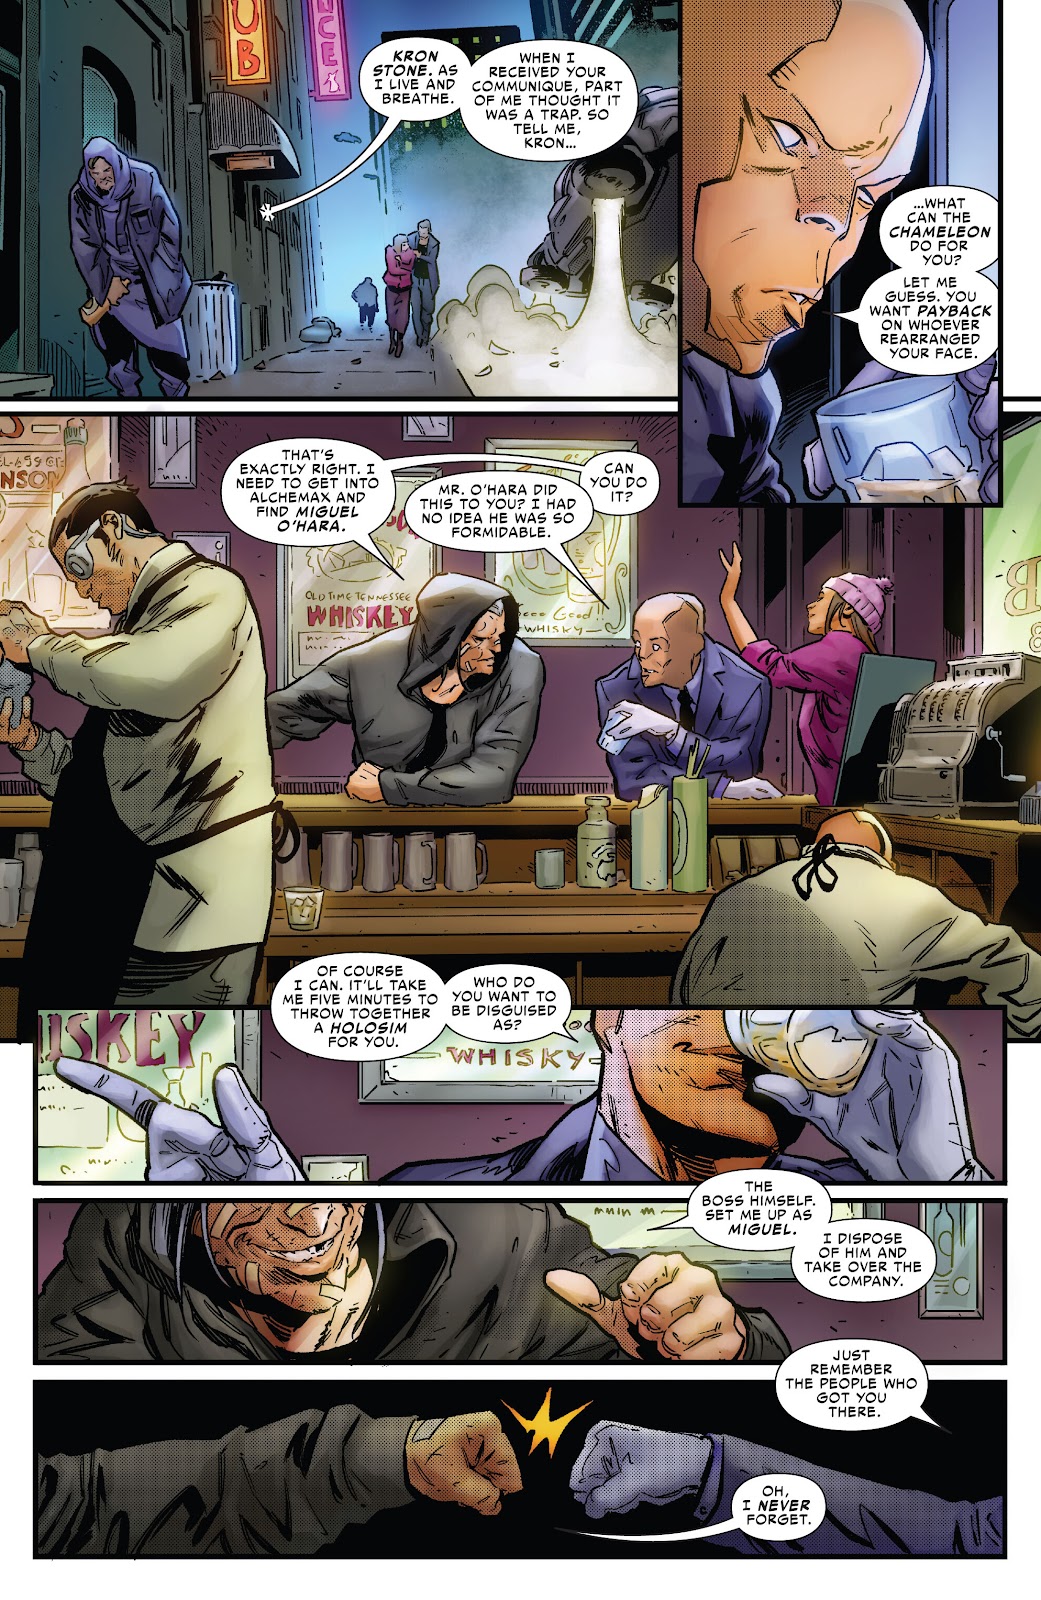 Symbiote Spider-Man 2099 issue 2 - Page 5